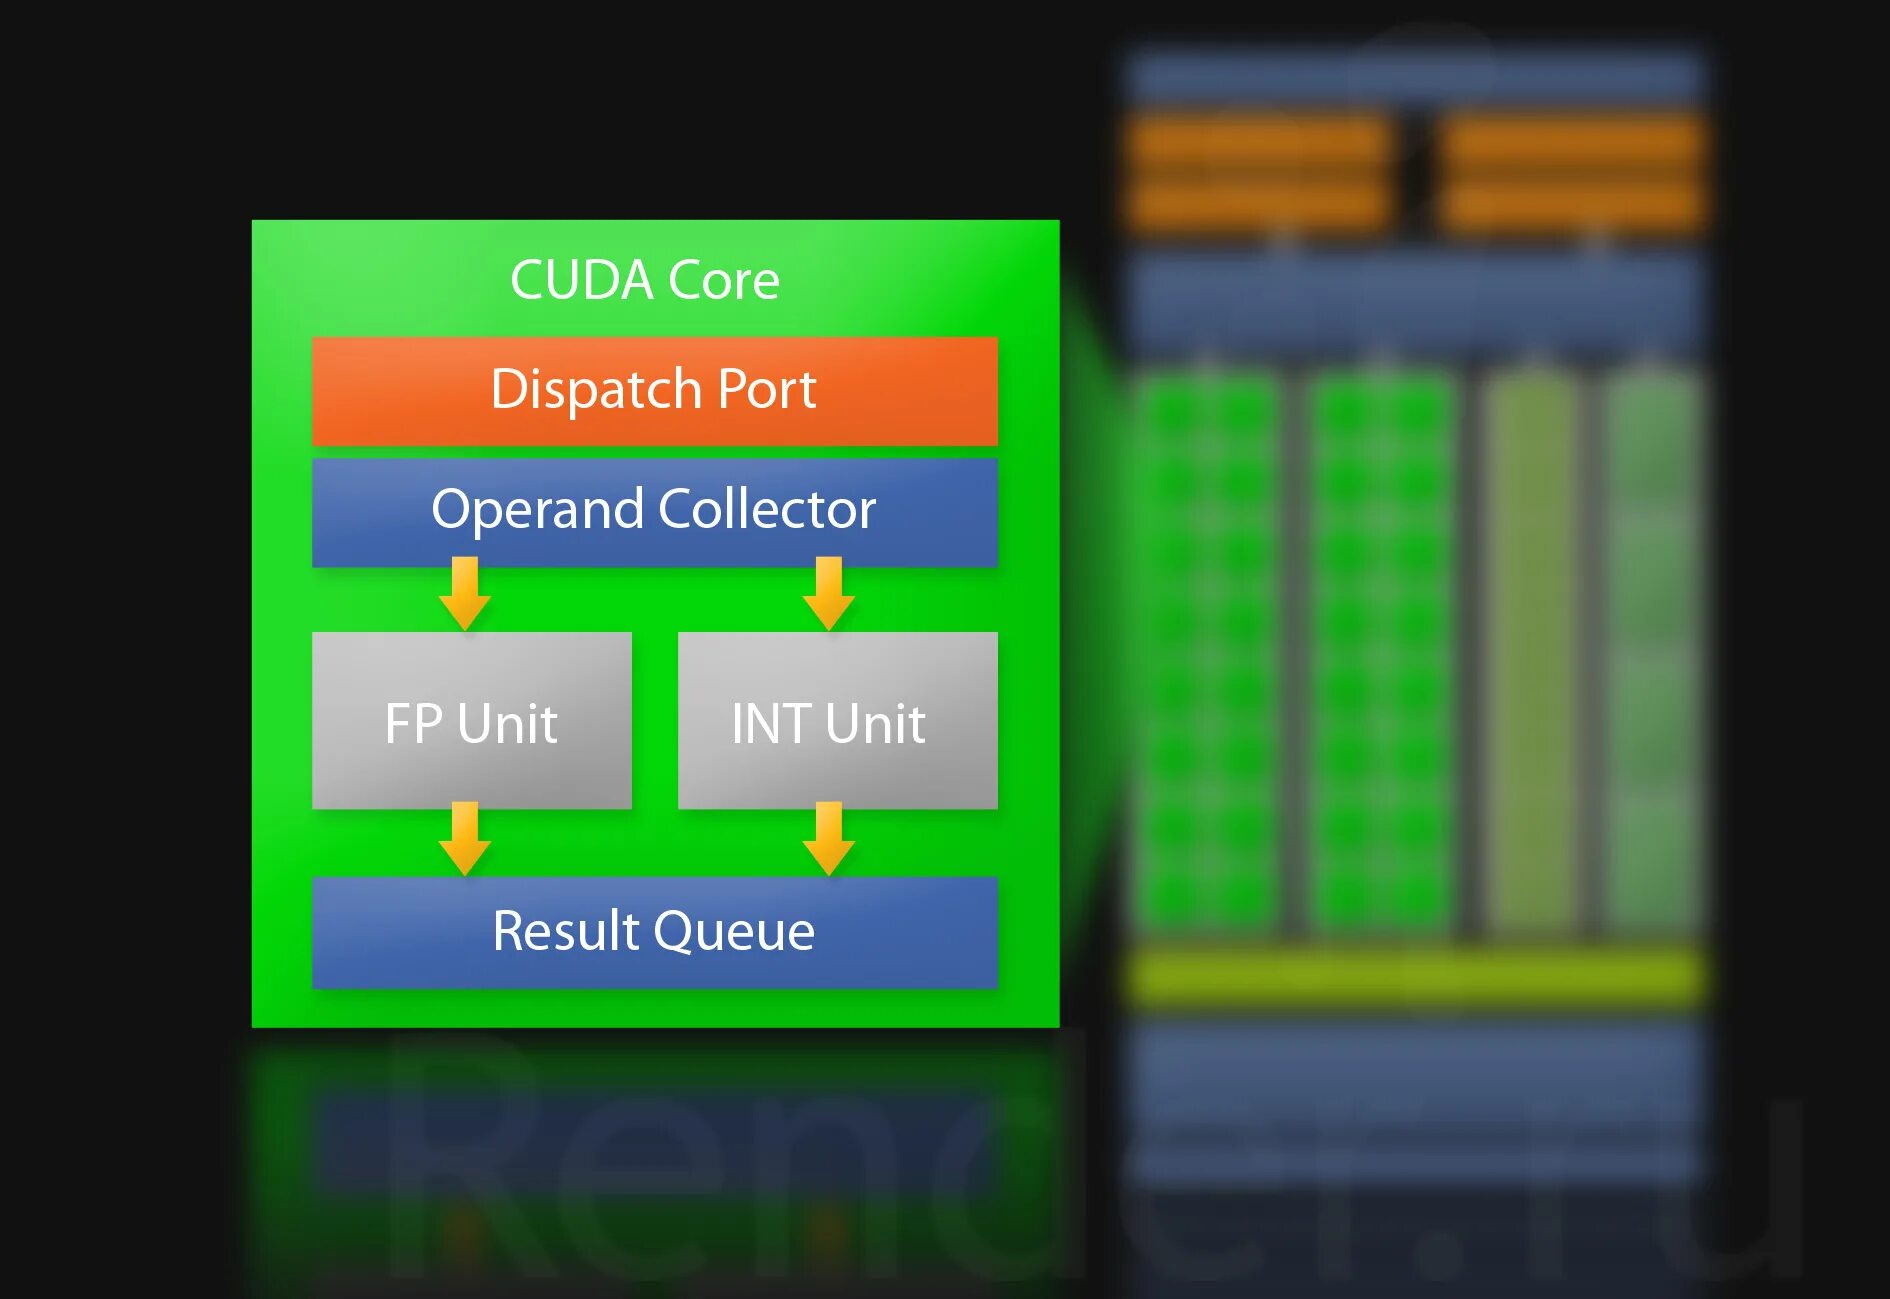 CUDA ядра. CUDA графические процессоры что это. CUDA ядра в видеокартах. CUDA ядра график.